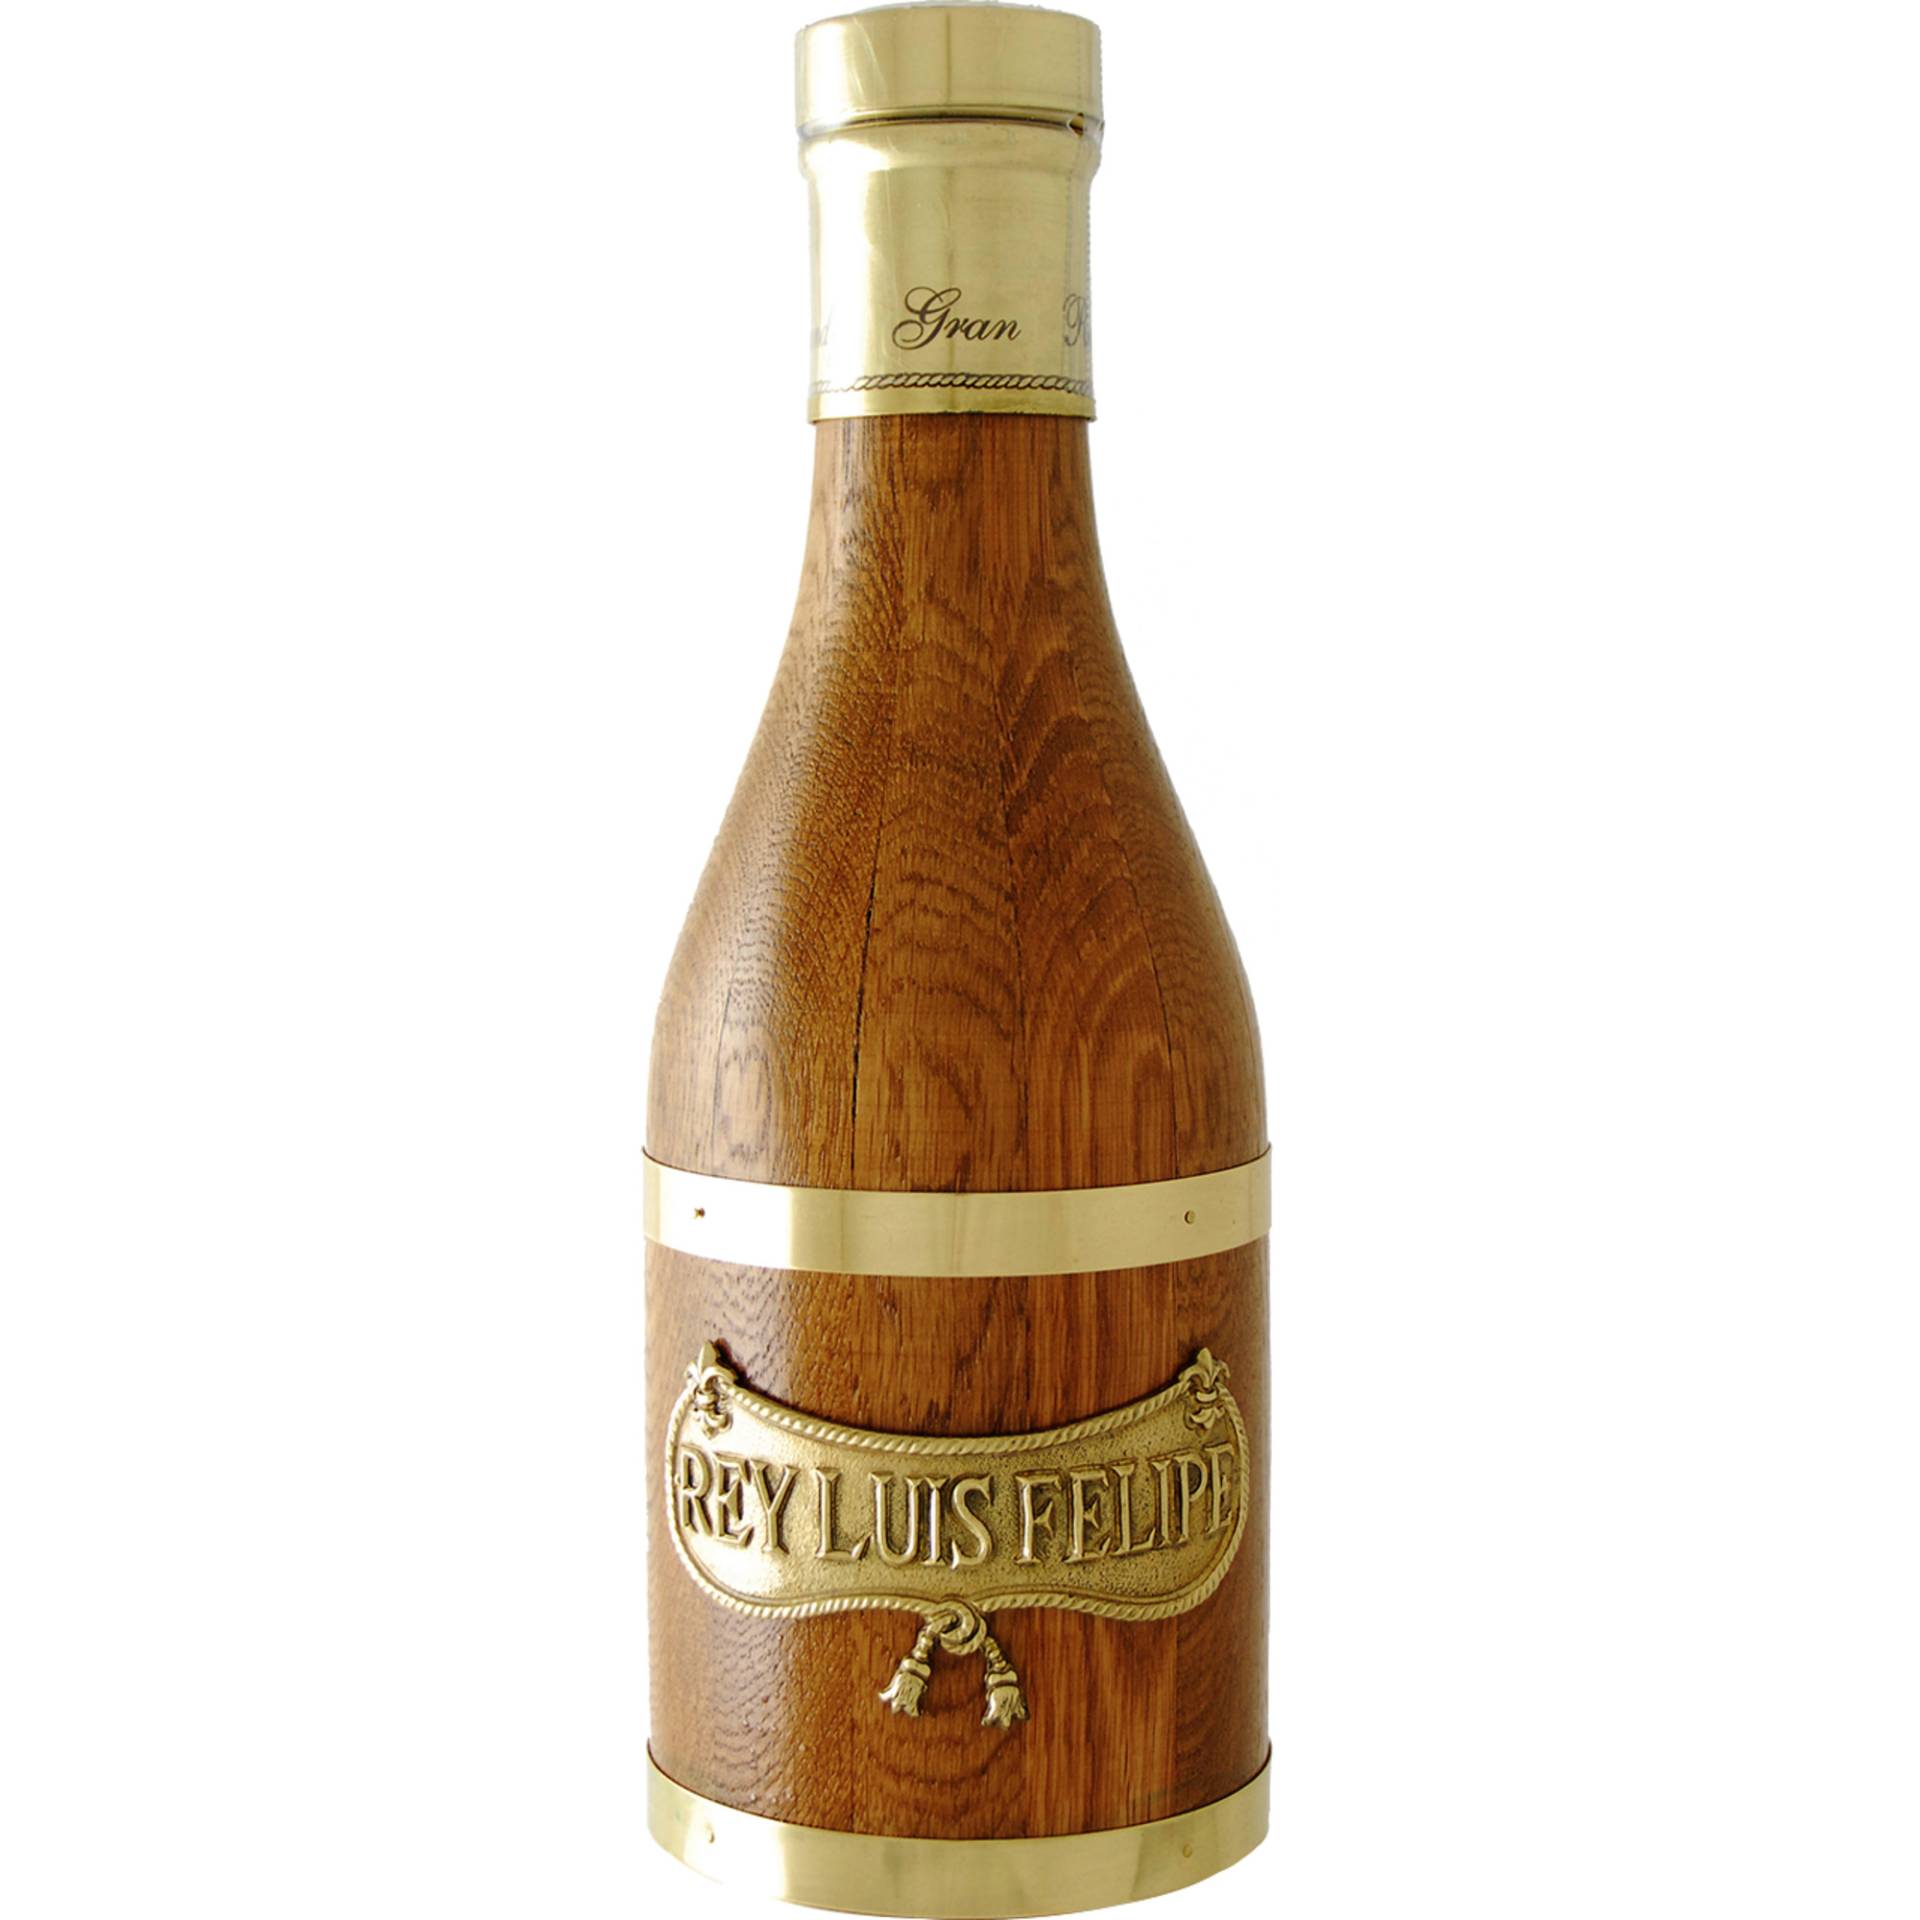 Brandy »Rey Luis Felipe« Gran Reserva - 0,7 L.  0.7L 40% Vol. Brandy aus Spanien von Rubio